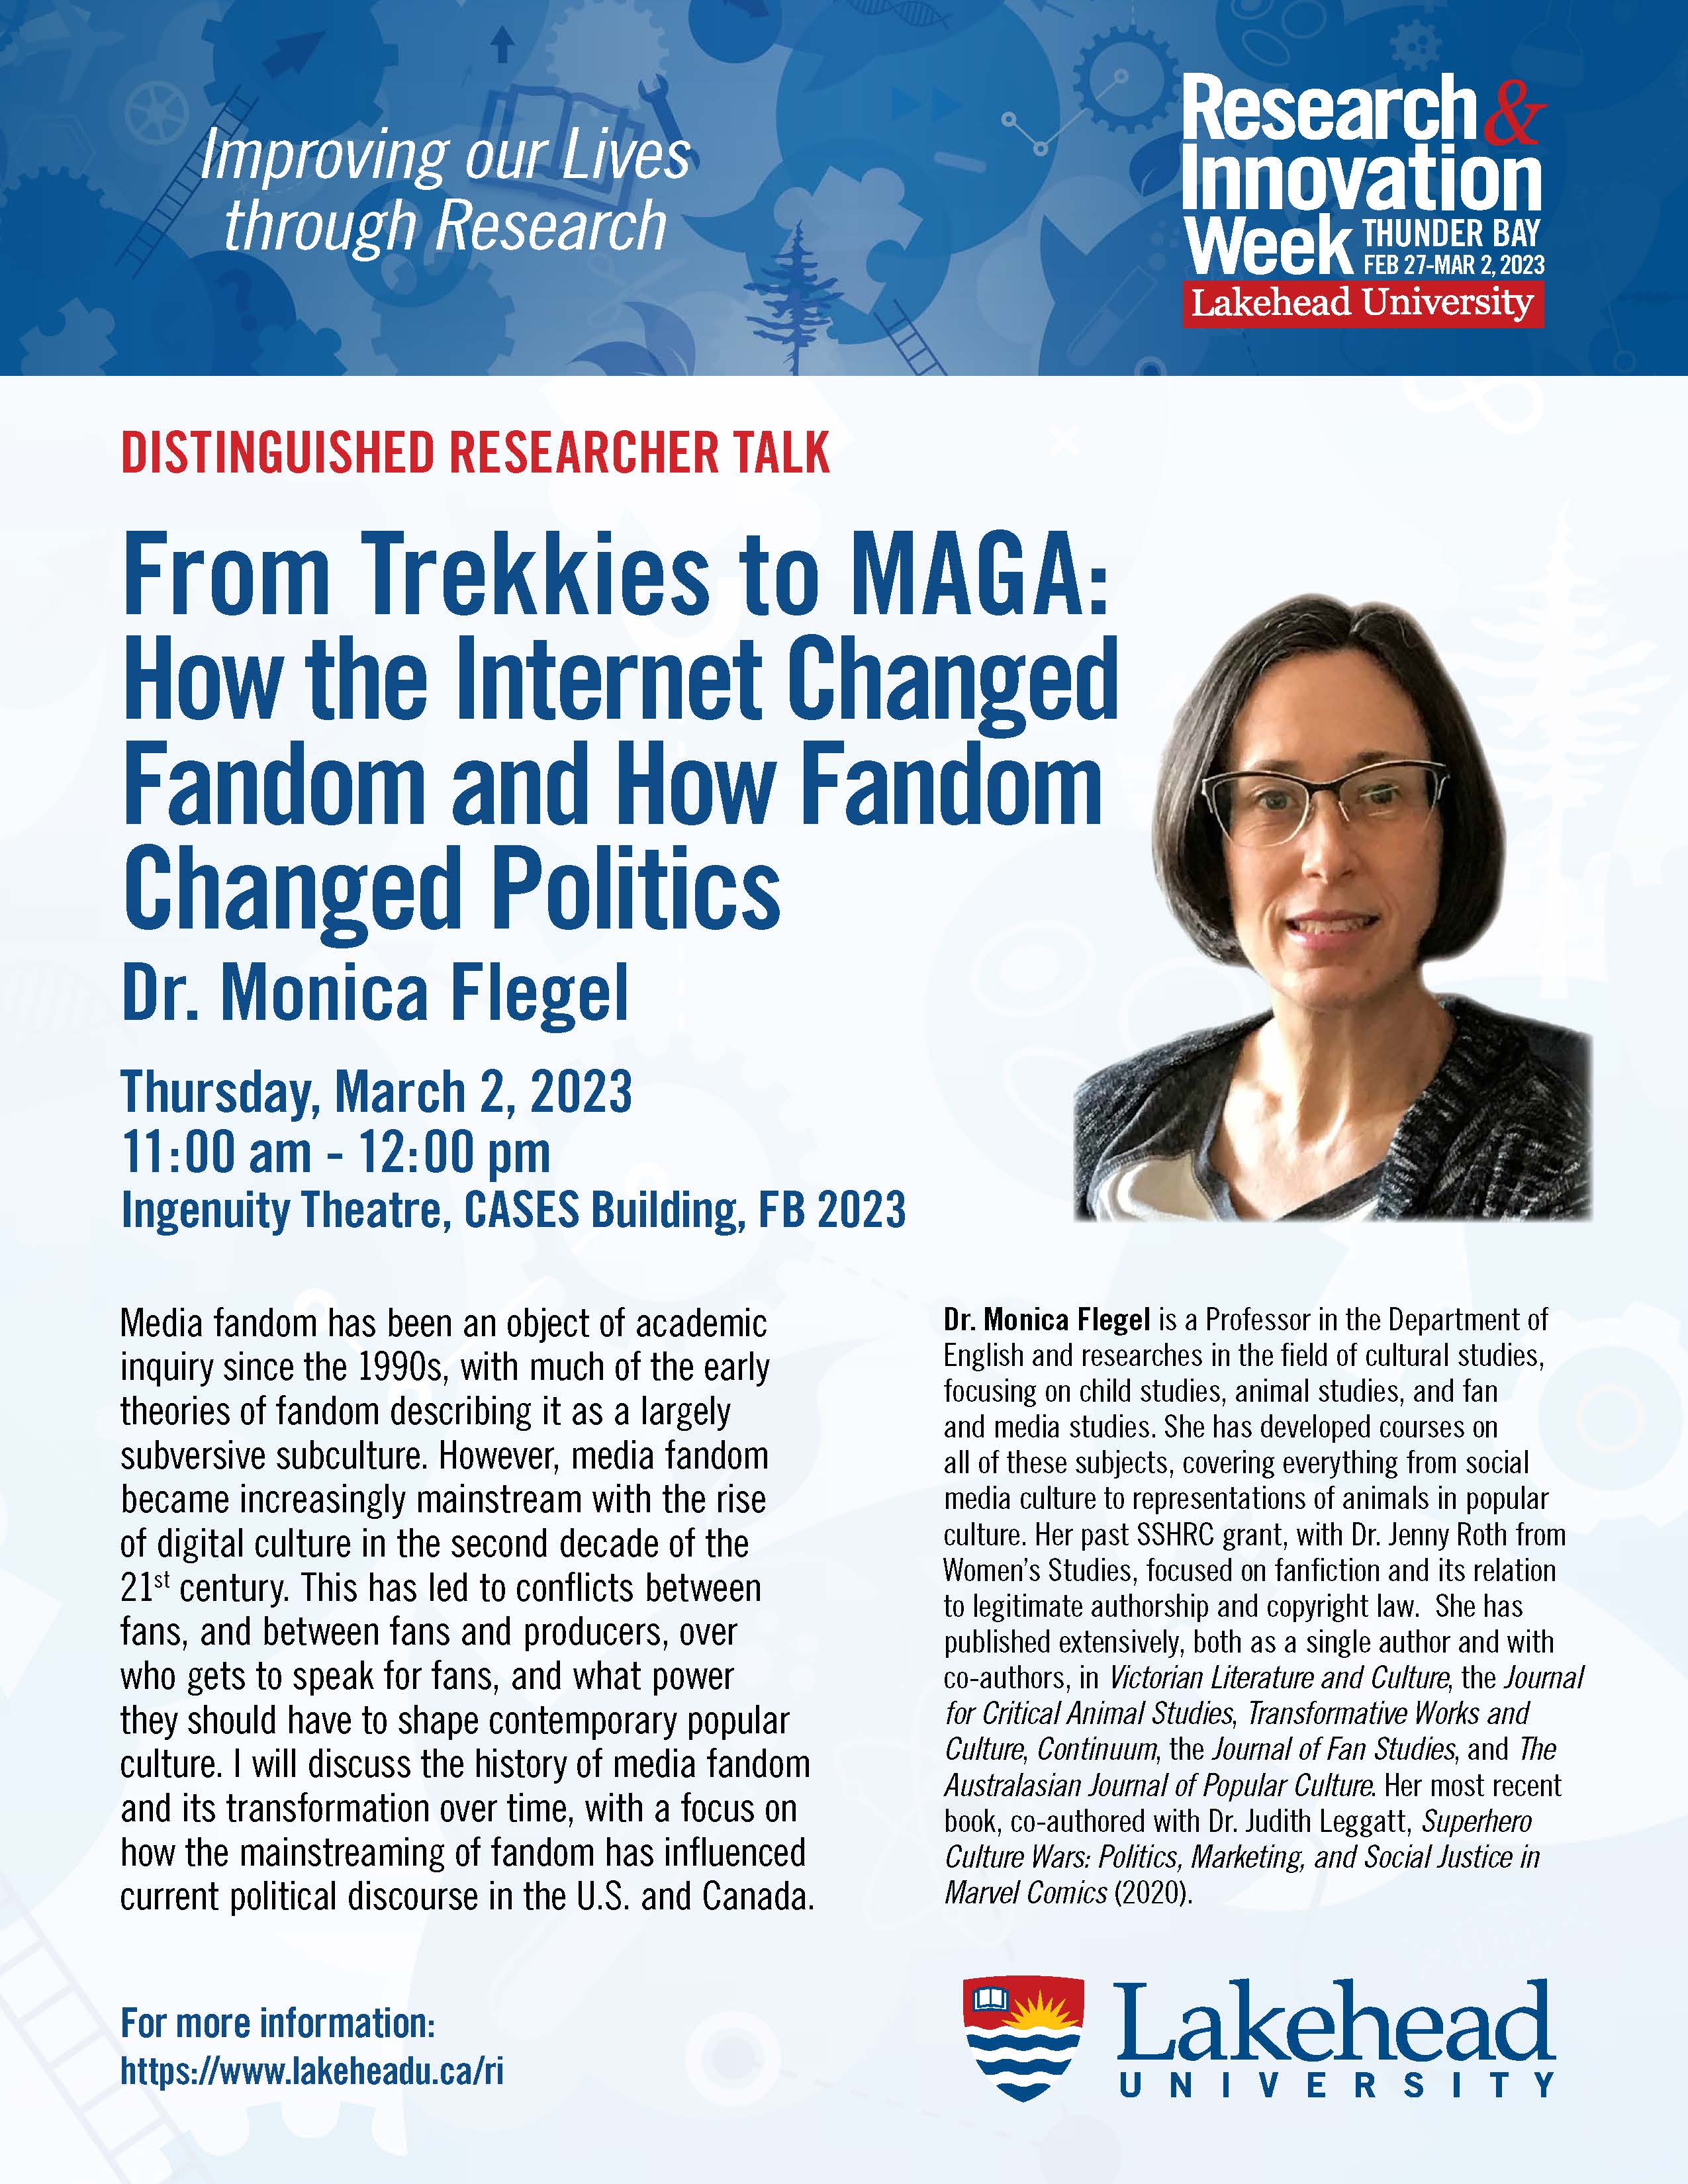 Event Poster for Dr. Monica Flegel Distinguished Researcher Presentation